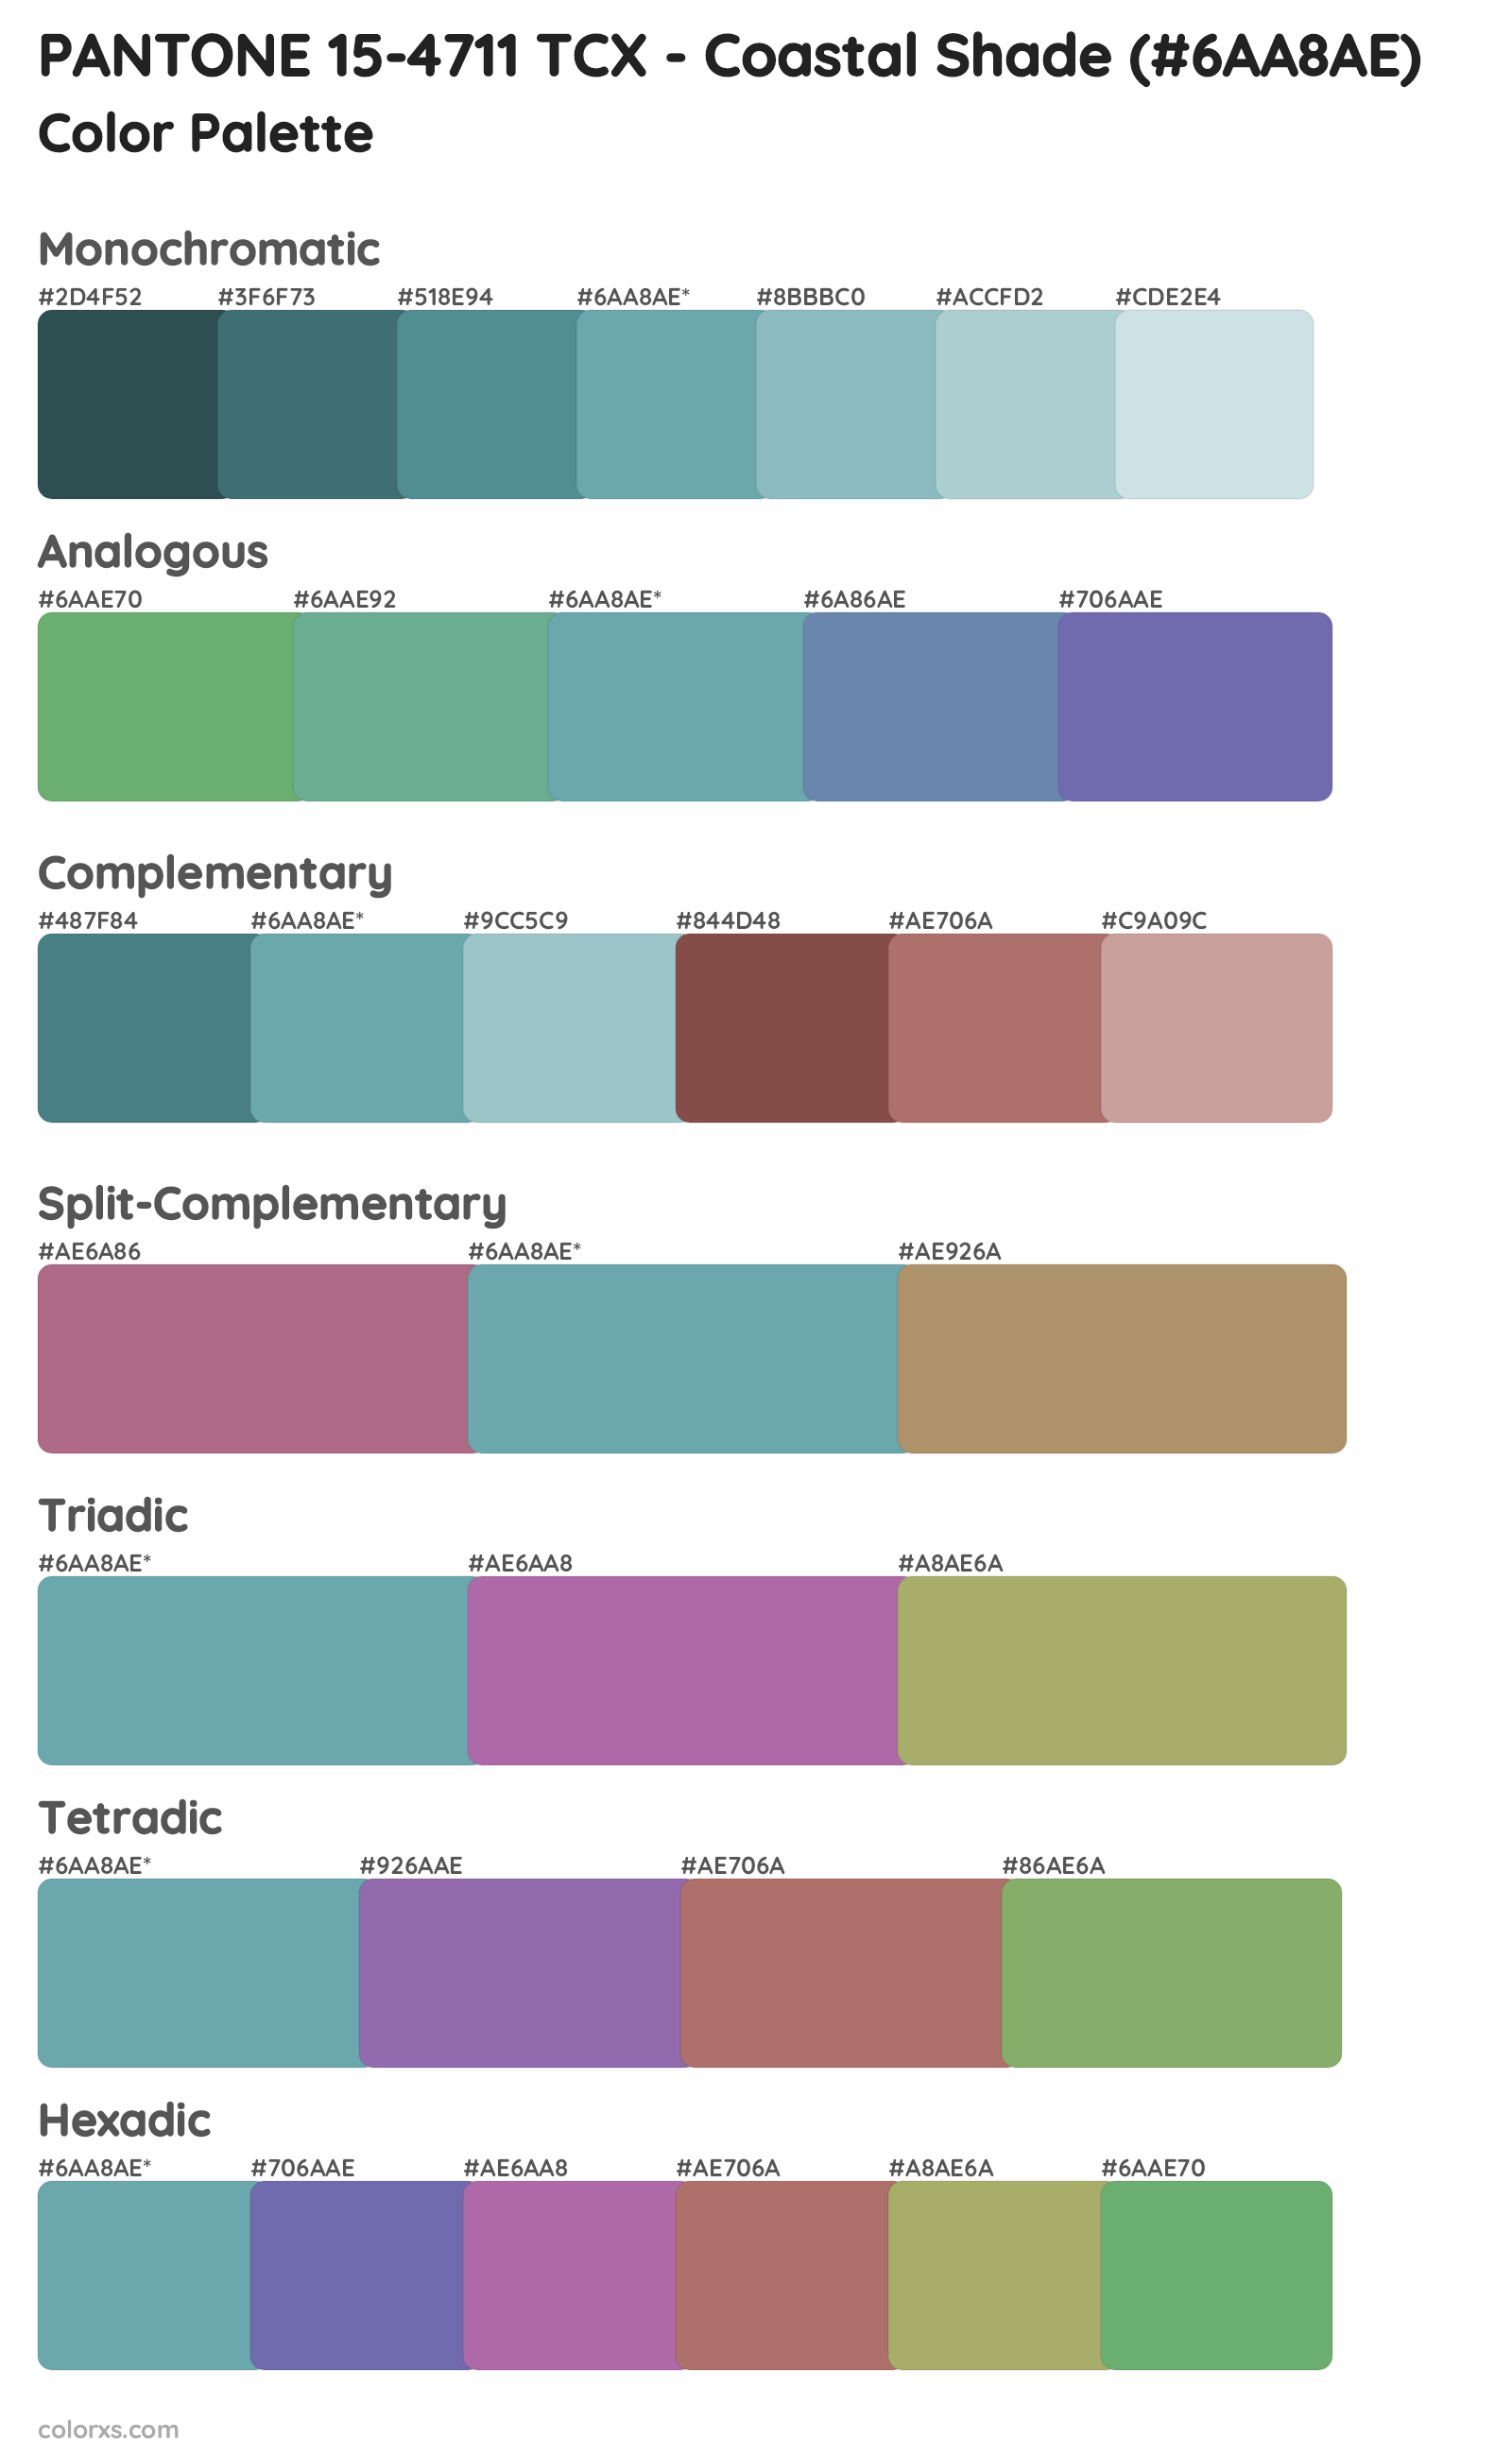 PANTONE 15-4711 TCX - Coastal Shade Color Scheme Palettes